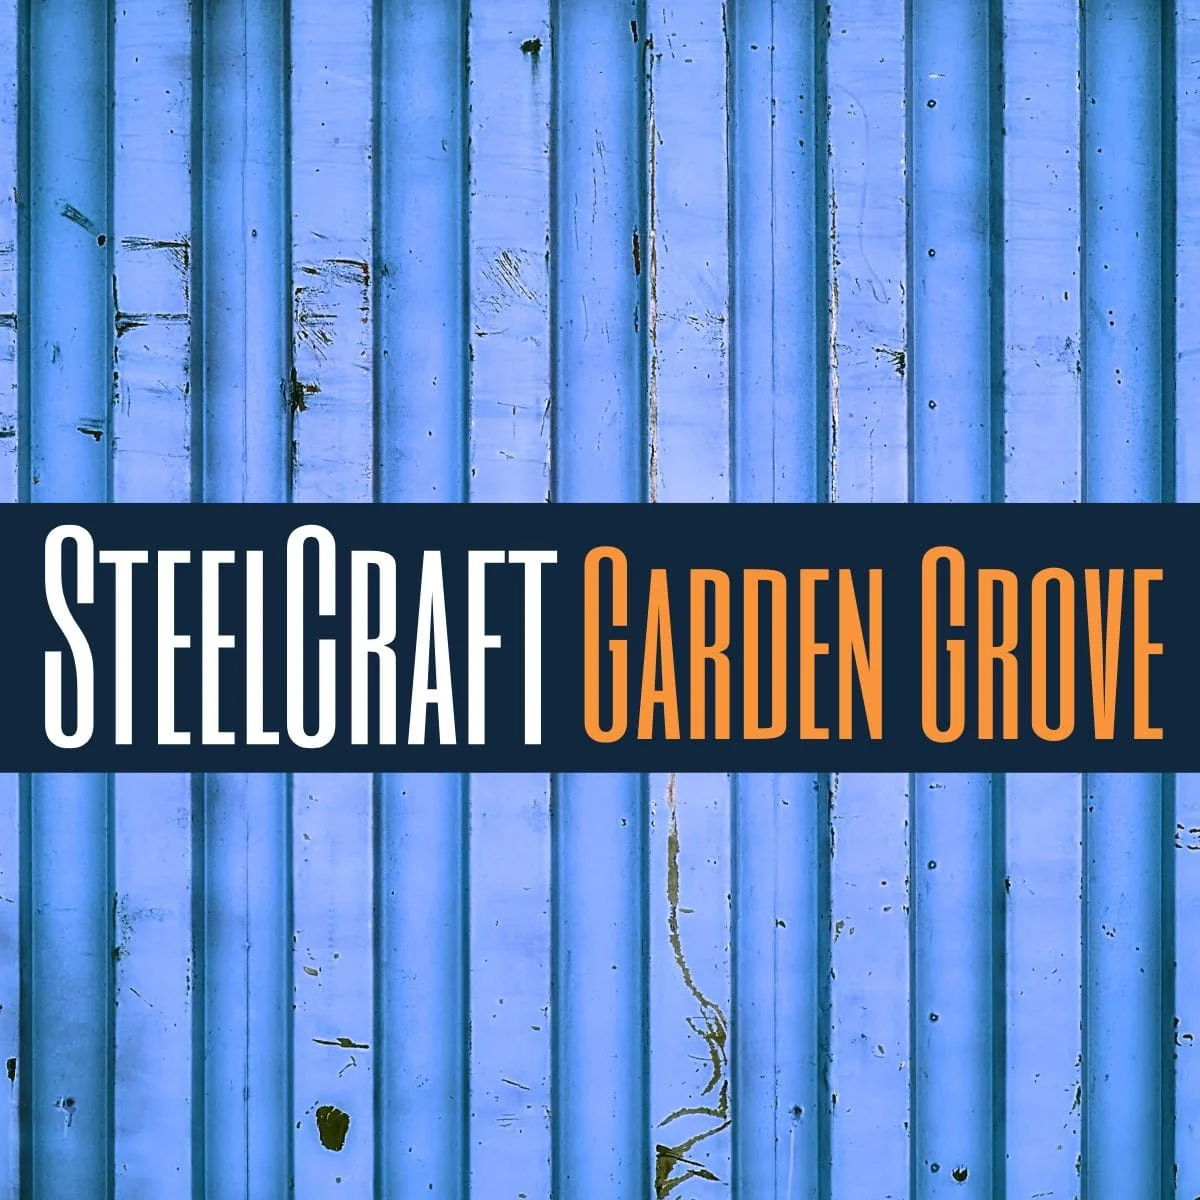 SteelCraft Garden Grove